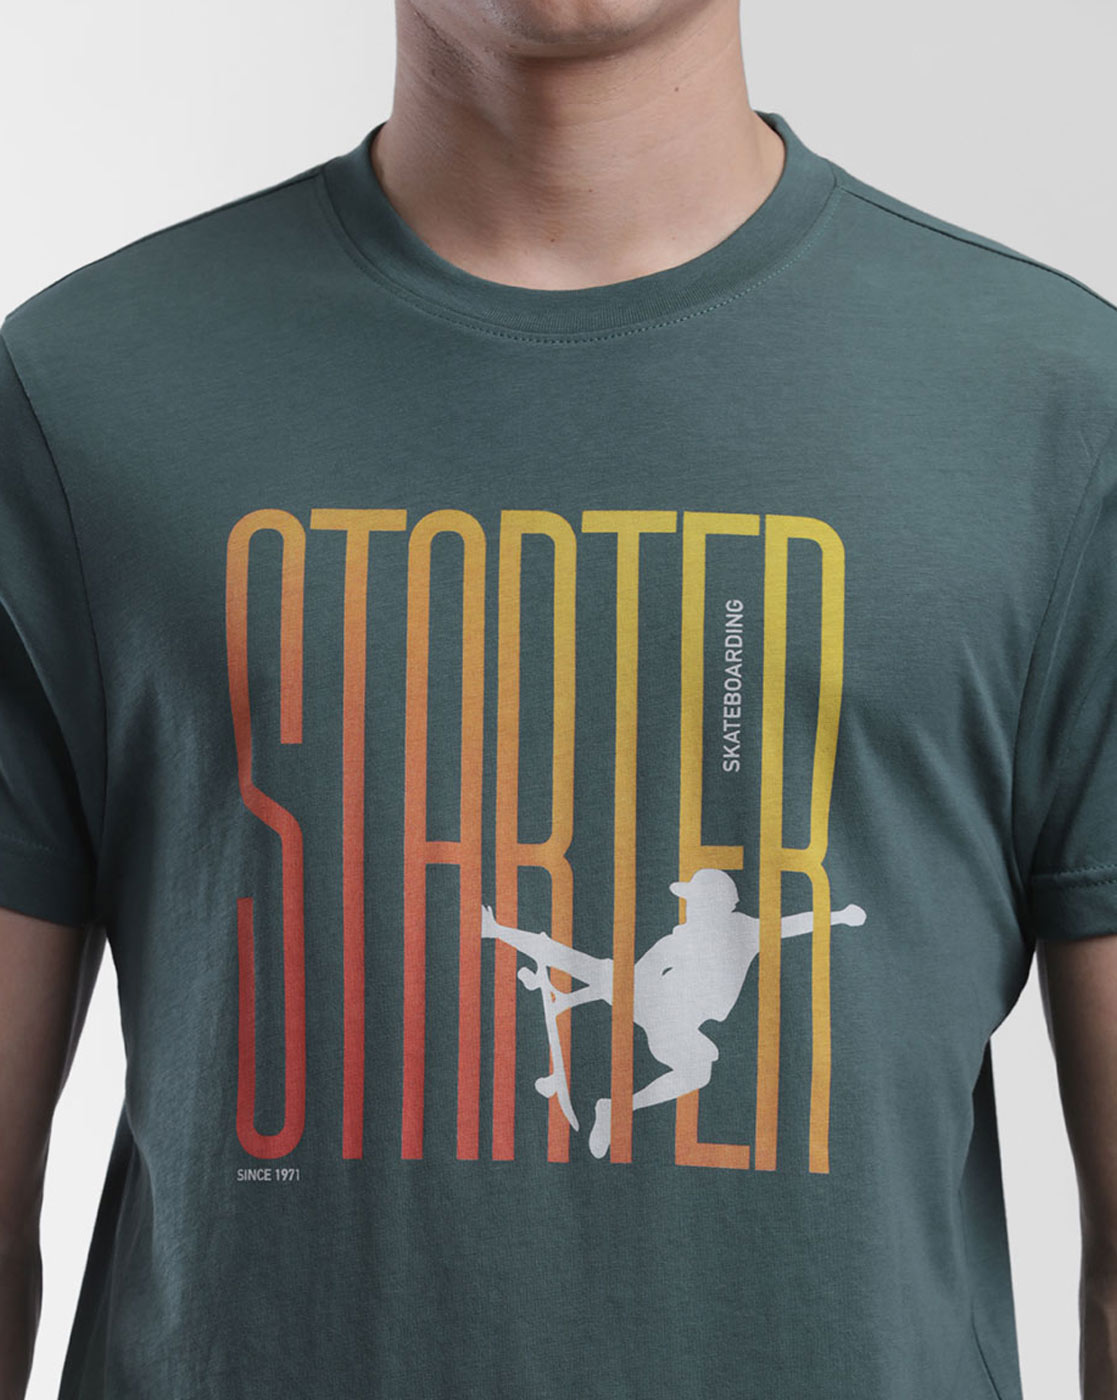 Starter Men Casual Wear T-Shirt